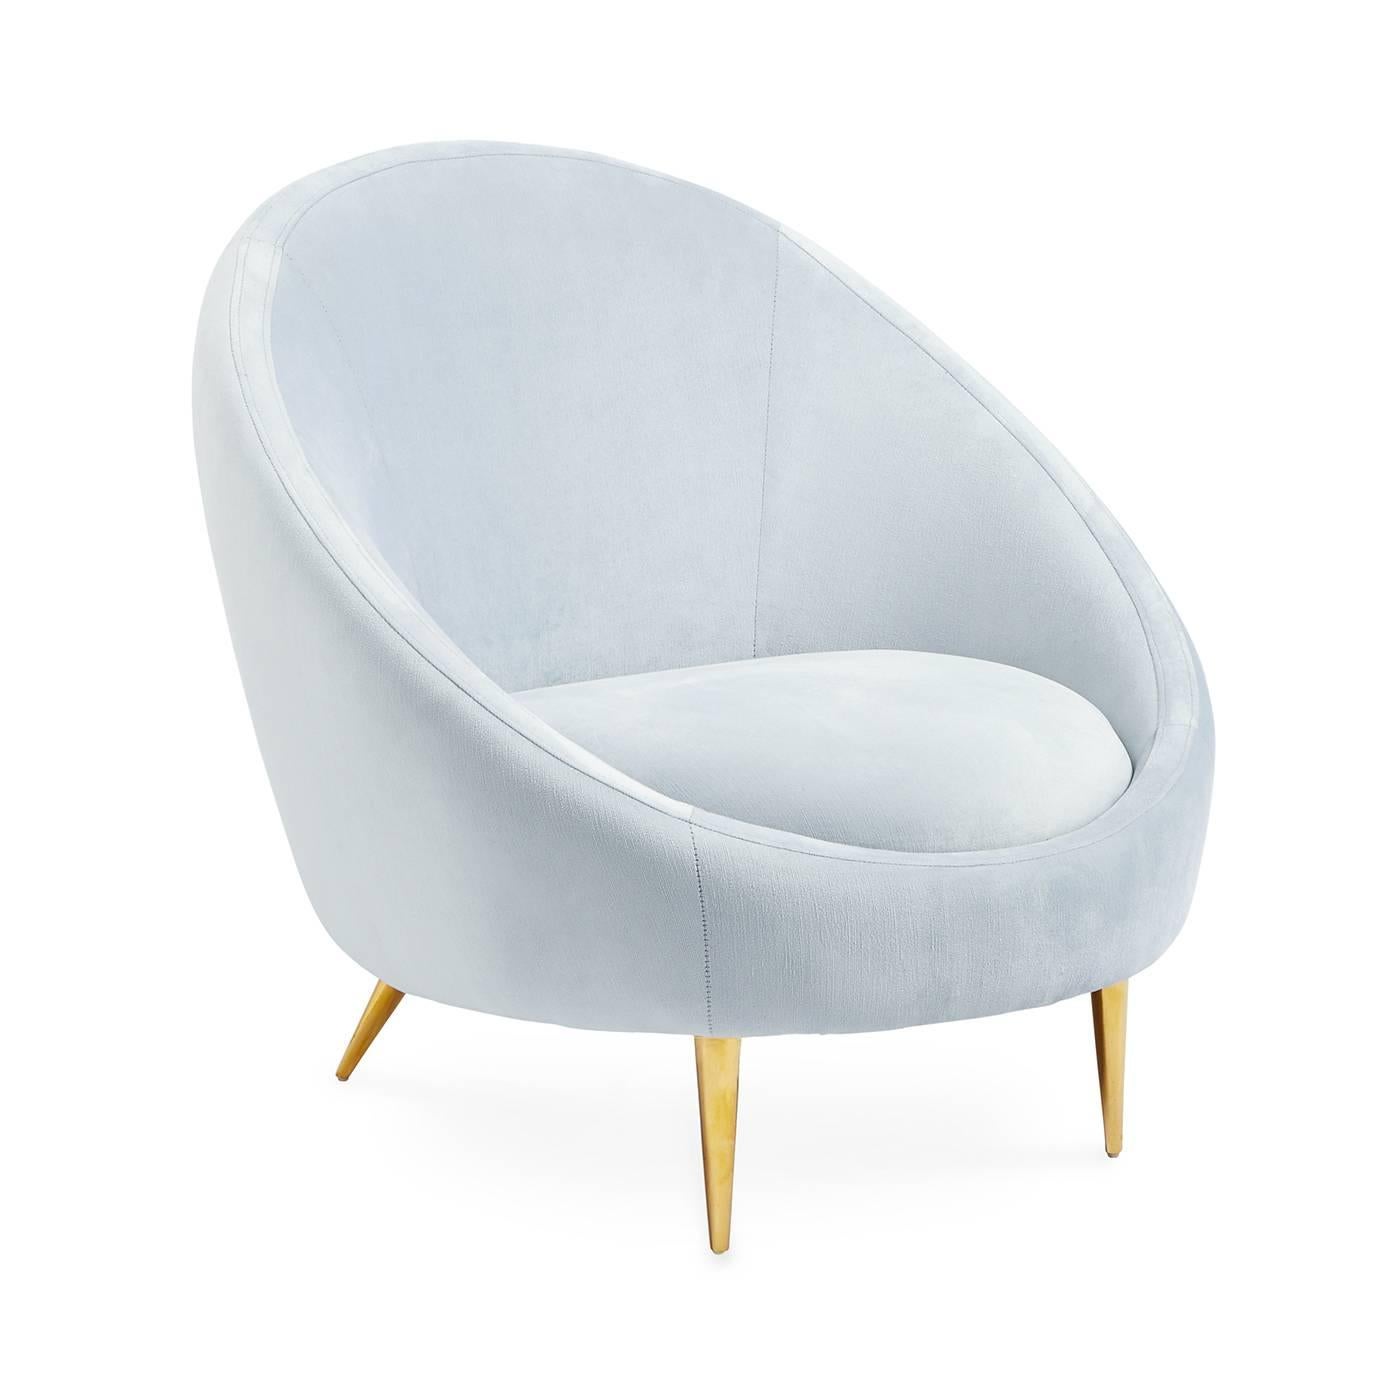 Envoyé par le ciel. Notre élégante chaise Ether est très puissante. Le geste minimaliste de la Silhouette, inspirée de la capsule, offre un confort surprenant, tandis que les pieds en forme de stiletto en laiton étincelant projettent suffisamment de